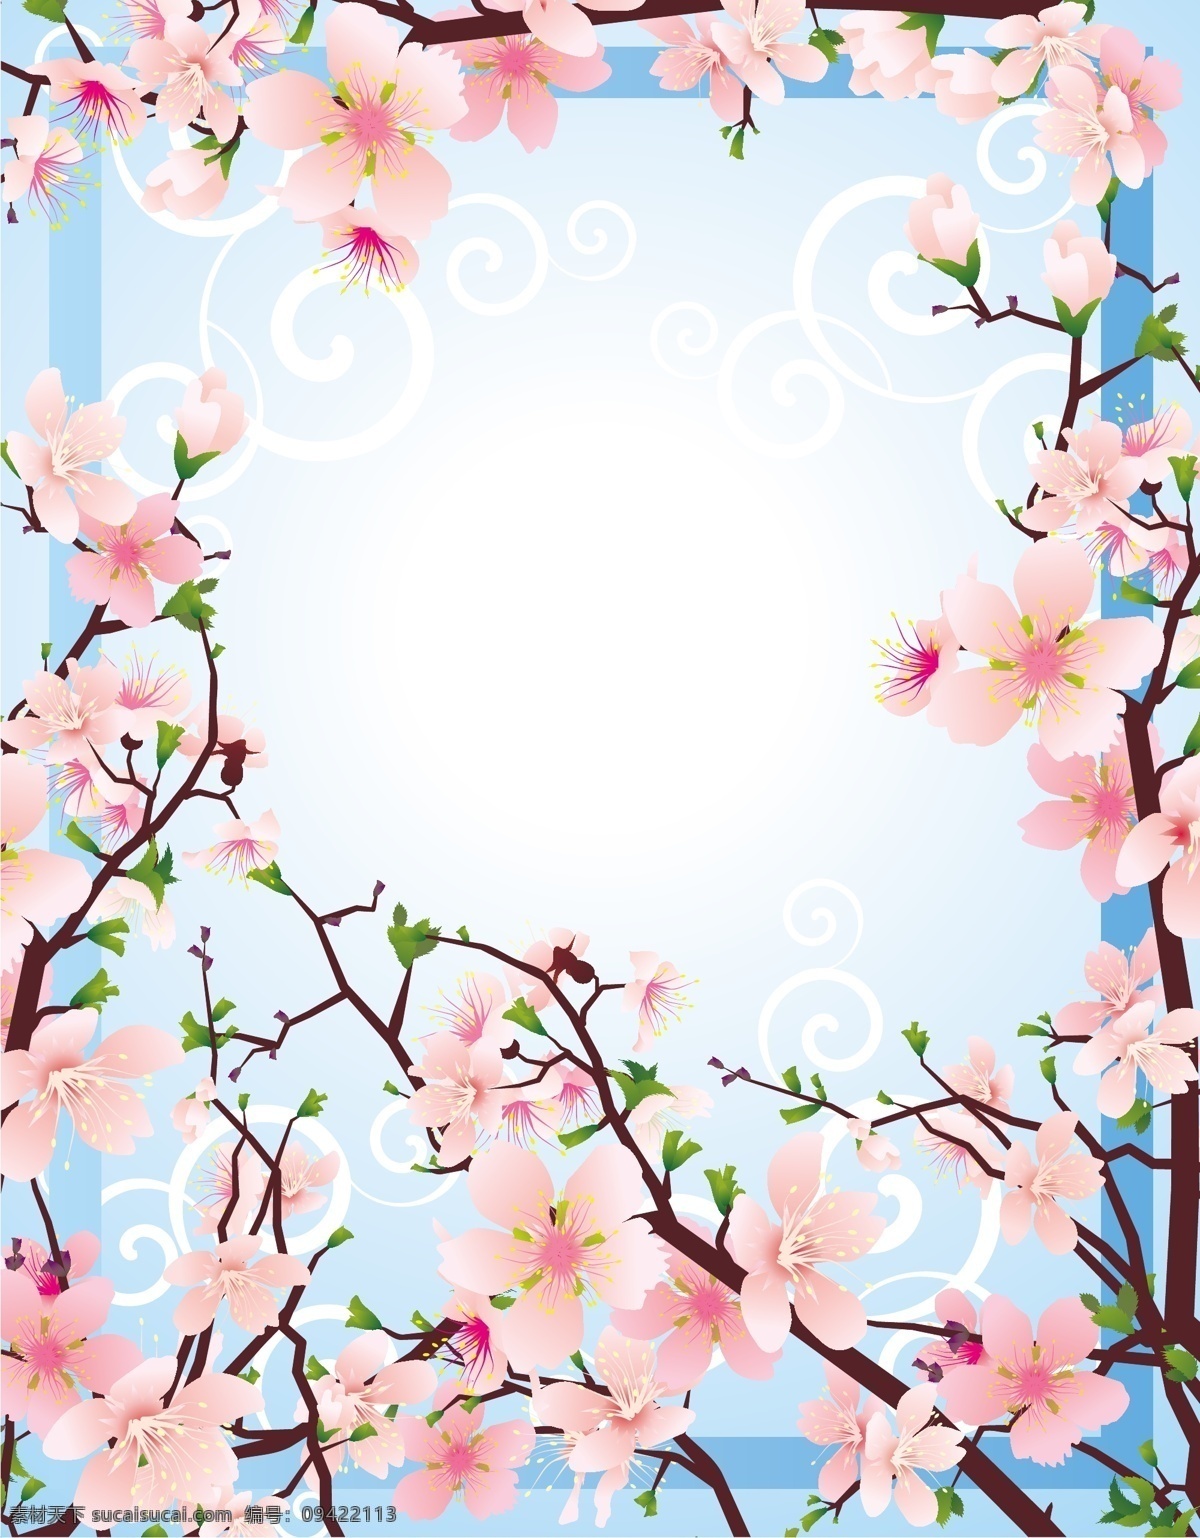 美丽 花 桃 枝 矢 春天 缎带 花瓶 鸟类 矢量素材 芽 自然 美丽的 桃枝 矢量 矢量图 日常生活